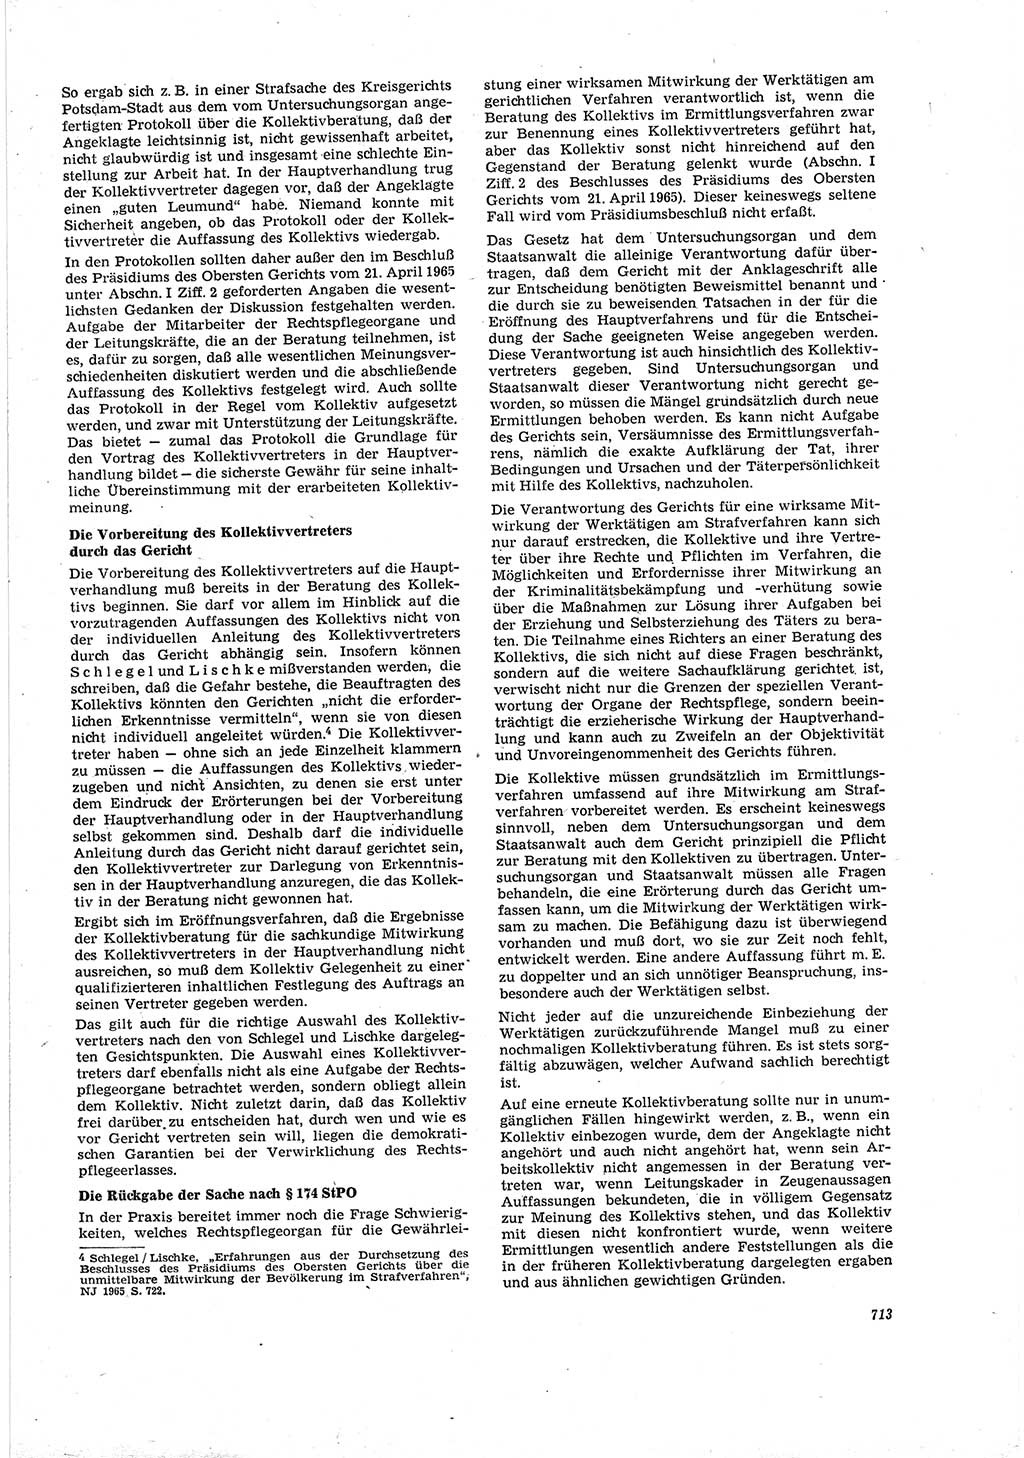 Neue Justiz (NJ), Zeitschrift für Recht und Rechtswissenschaft [Deutsche Demokratische Republik (DDR)], 20. Jahrgang 1966, Seite 713 (NJ DDR 1966, S. 713)